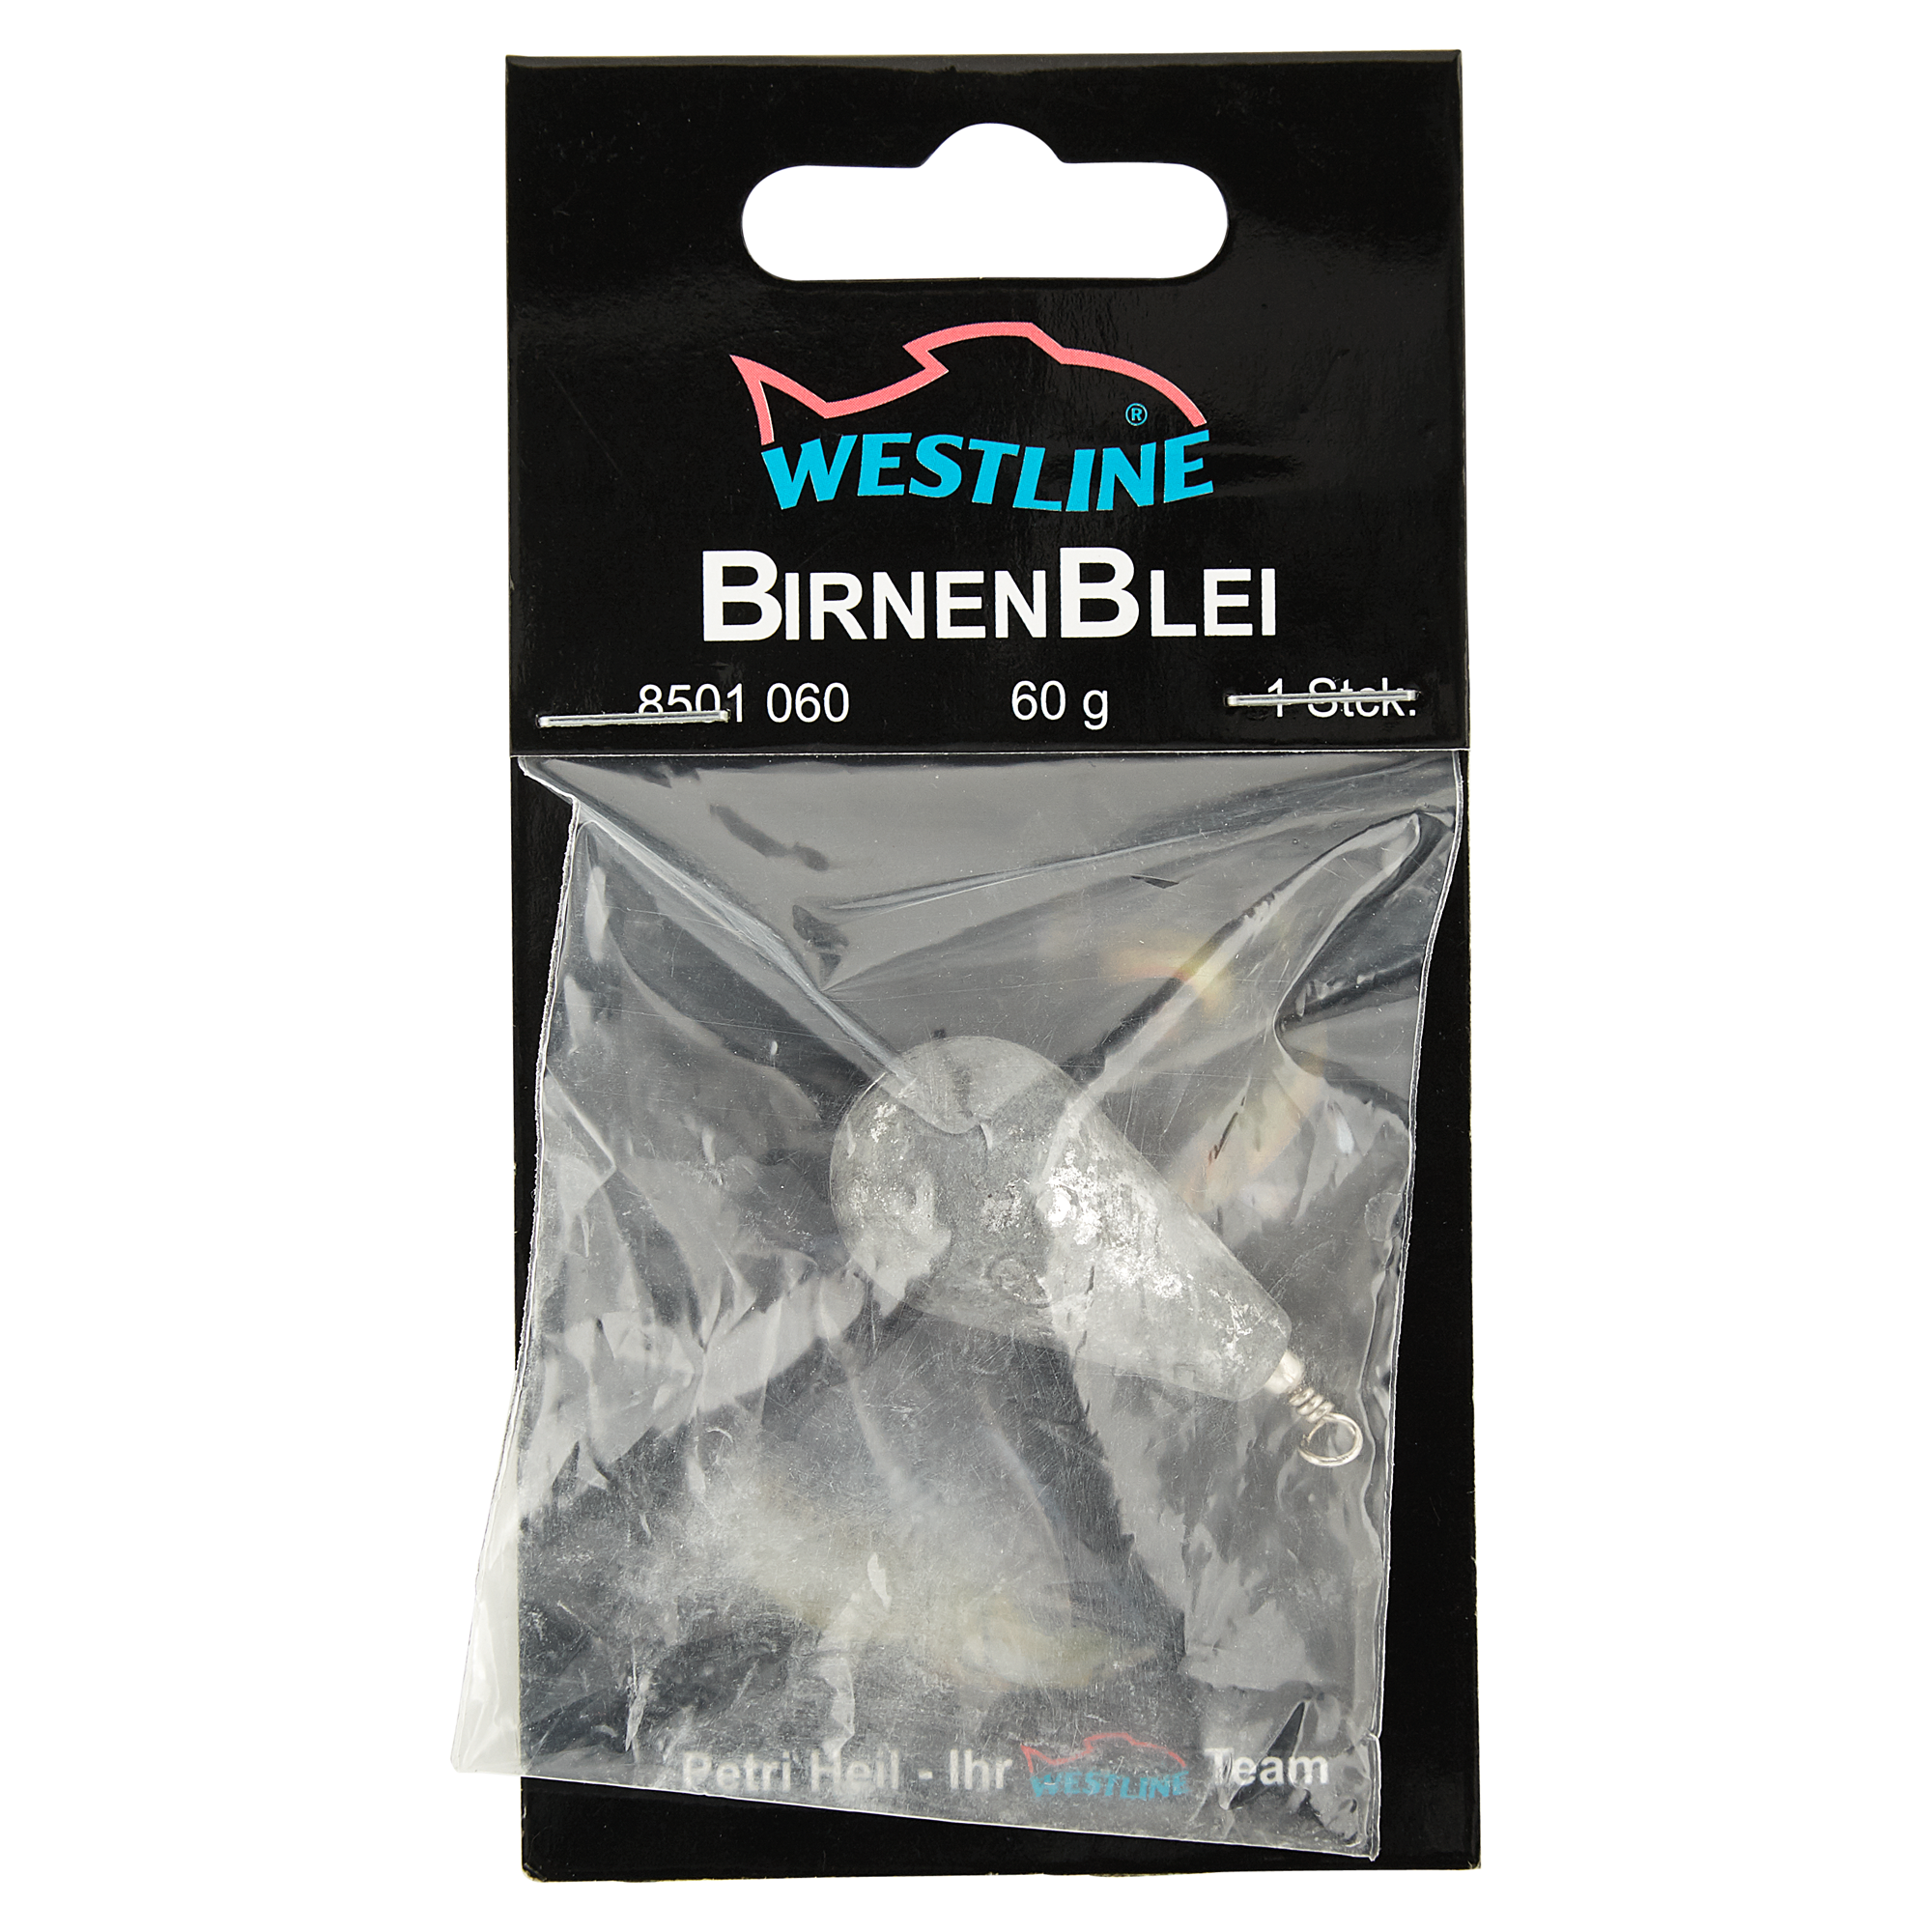 Birnenbleie mit Wirbel 60 g + product picture